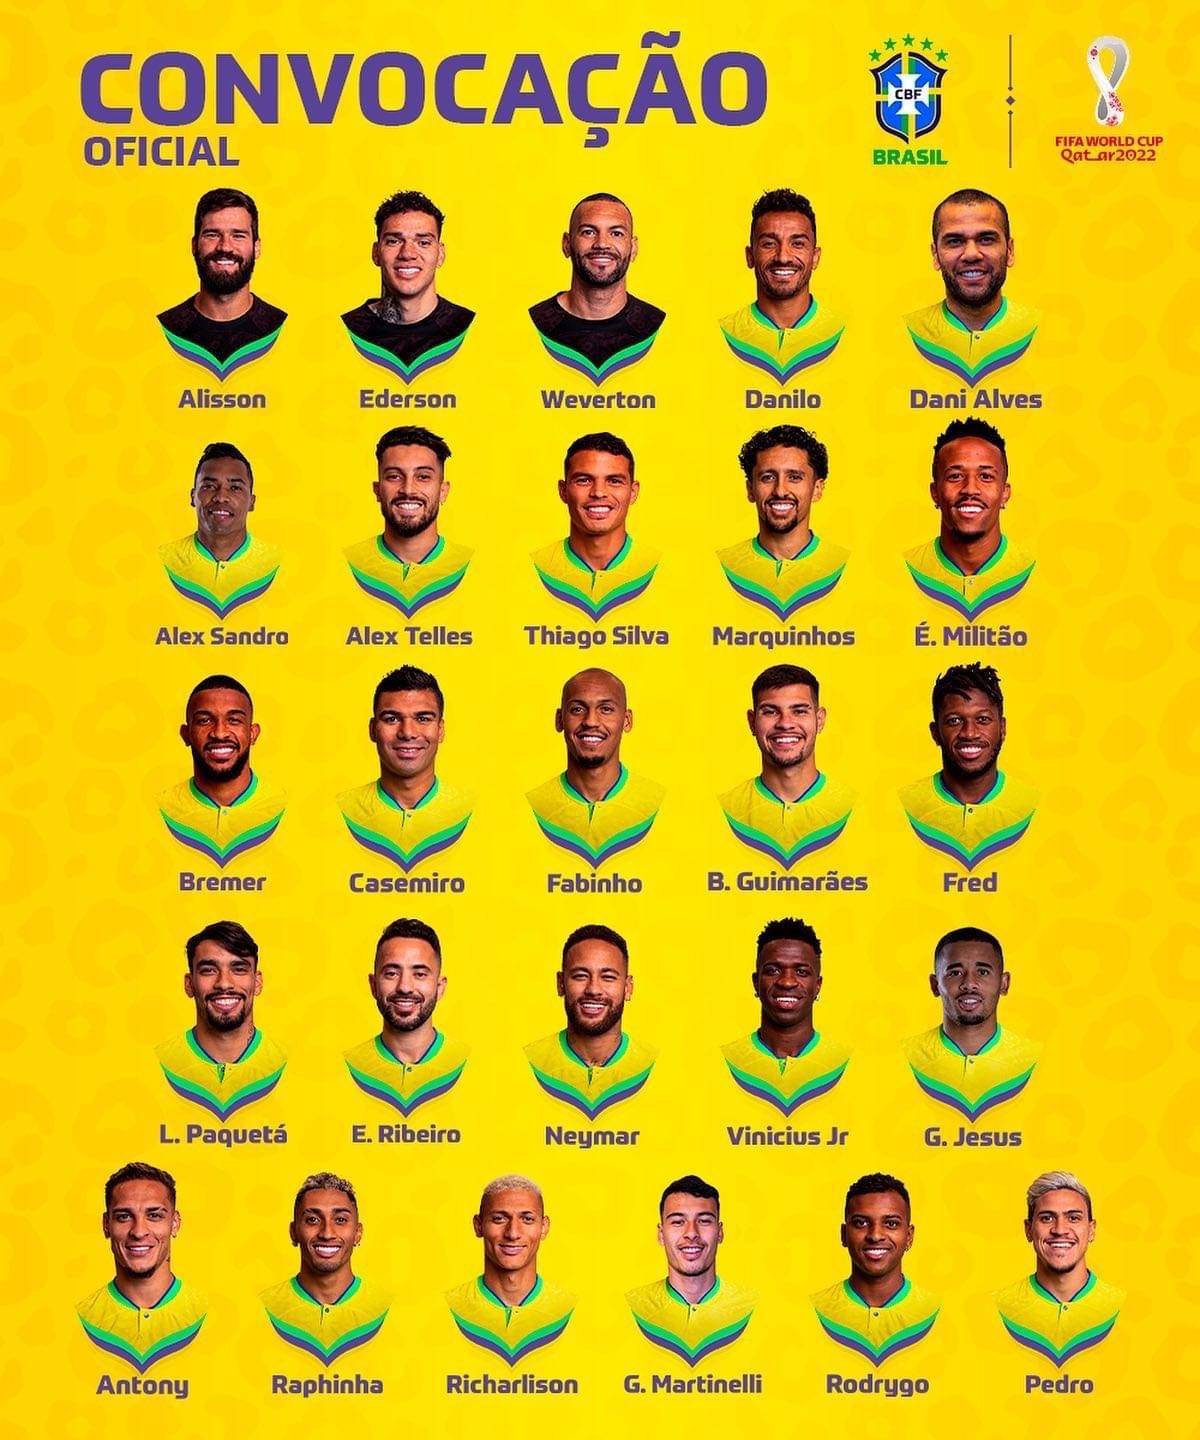 Danh sách chính thức đội tuyển Brazil ở World Cup 2022. Ảnh: Brazil Football